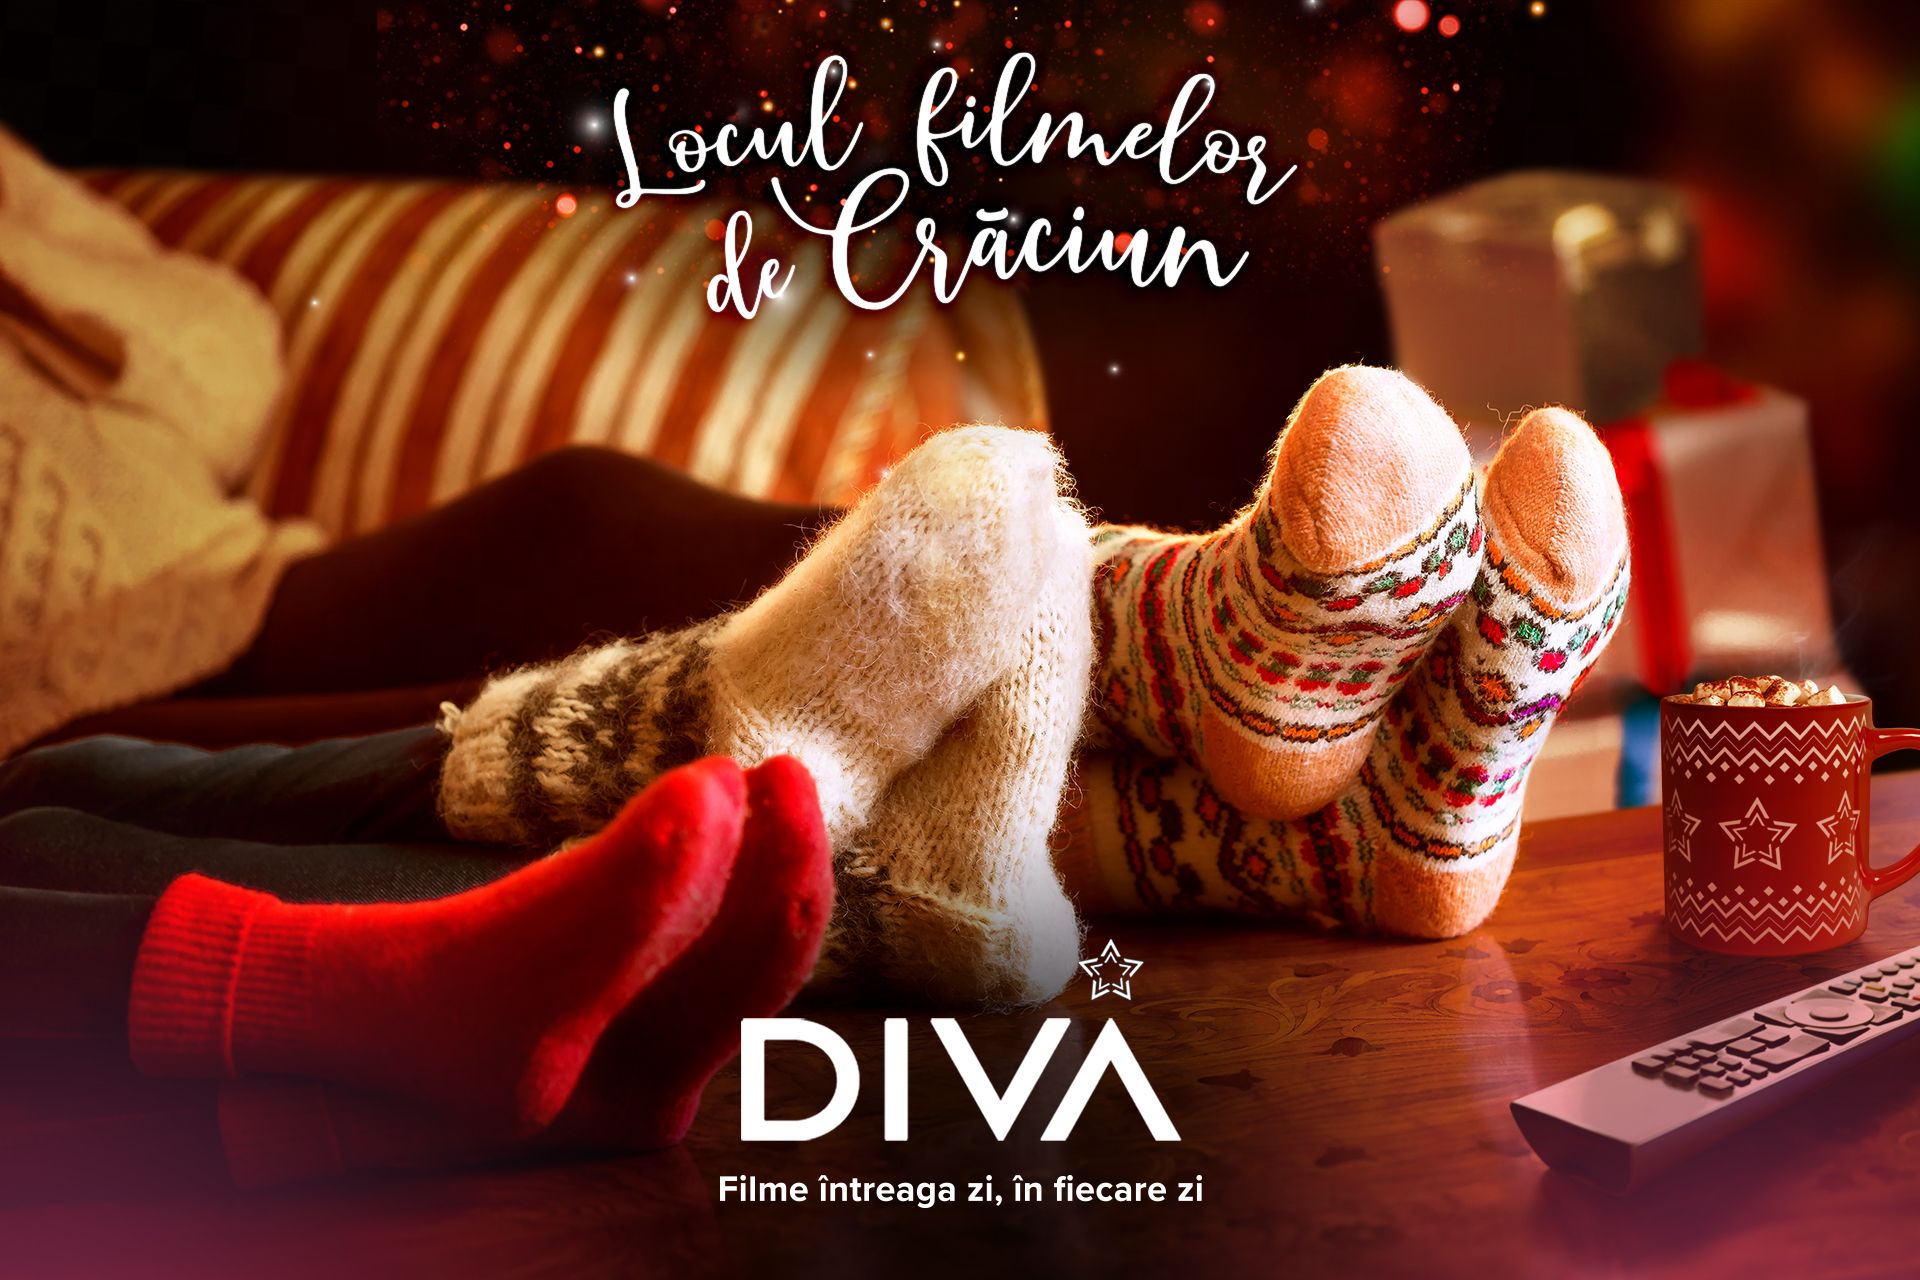 Din acest weekend puteți vedea filme de Crăciun la Diva